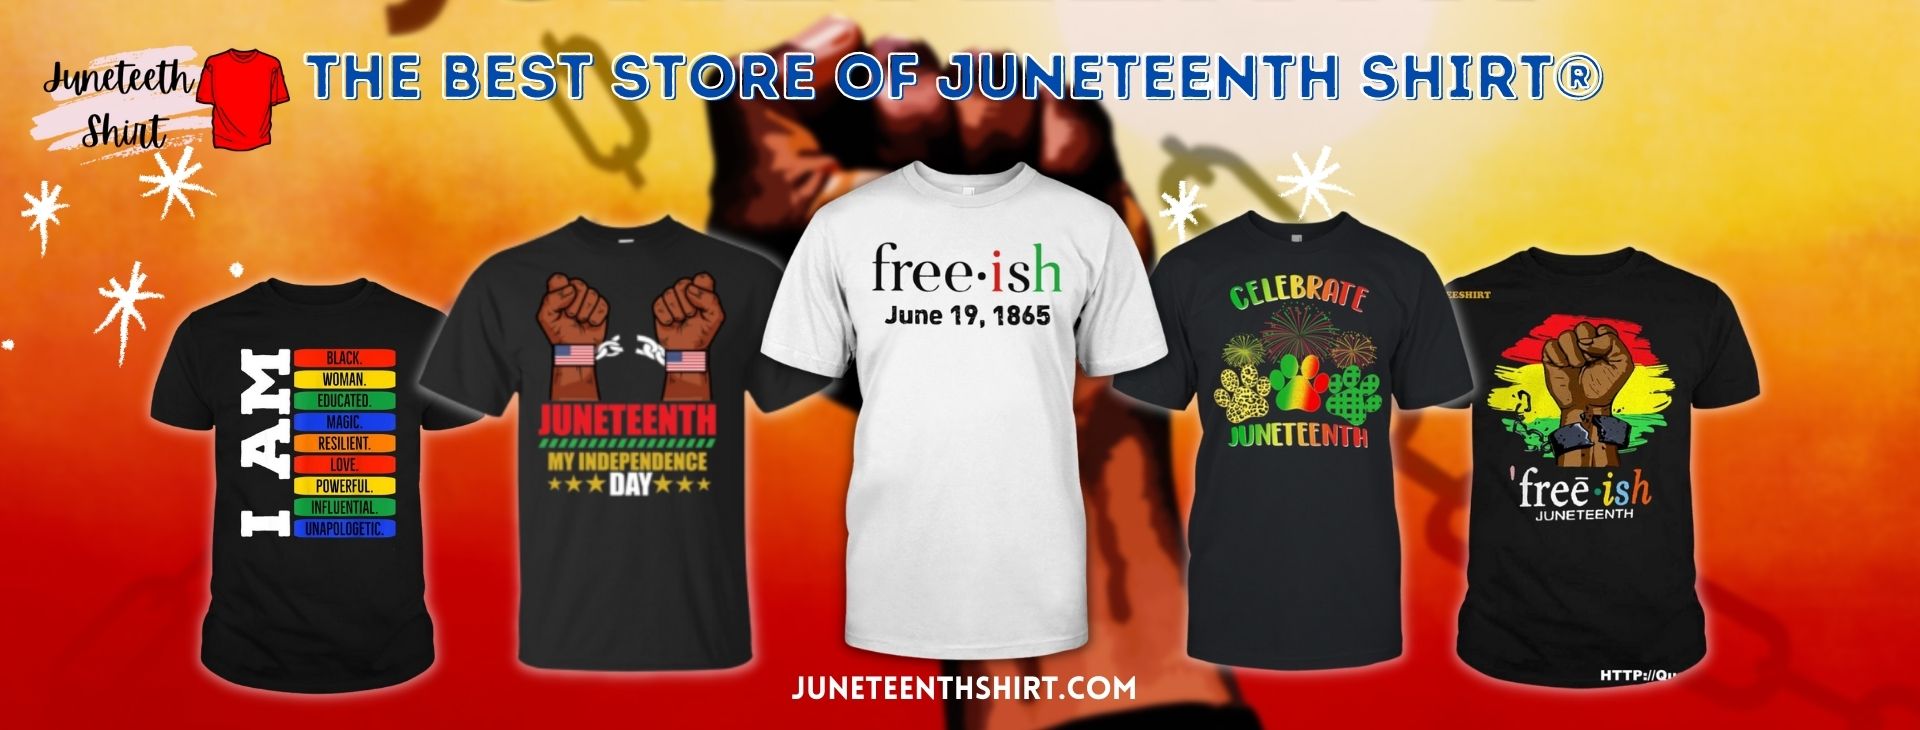 Juneteenth Shirt Store Banner - Juneteenth Shirt